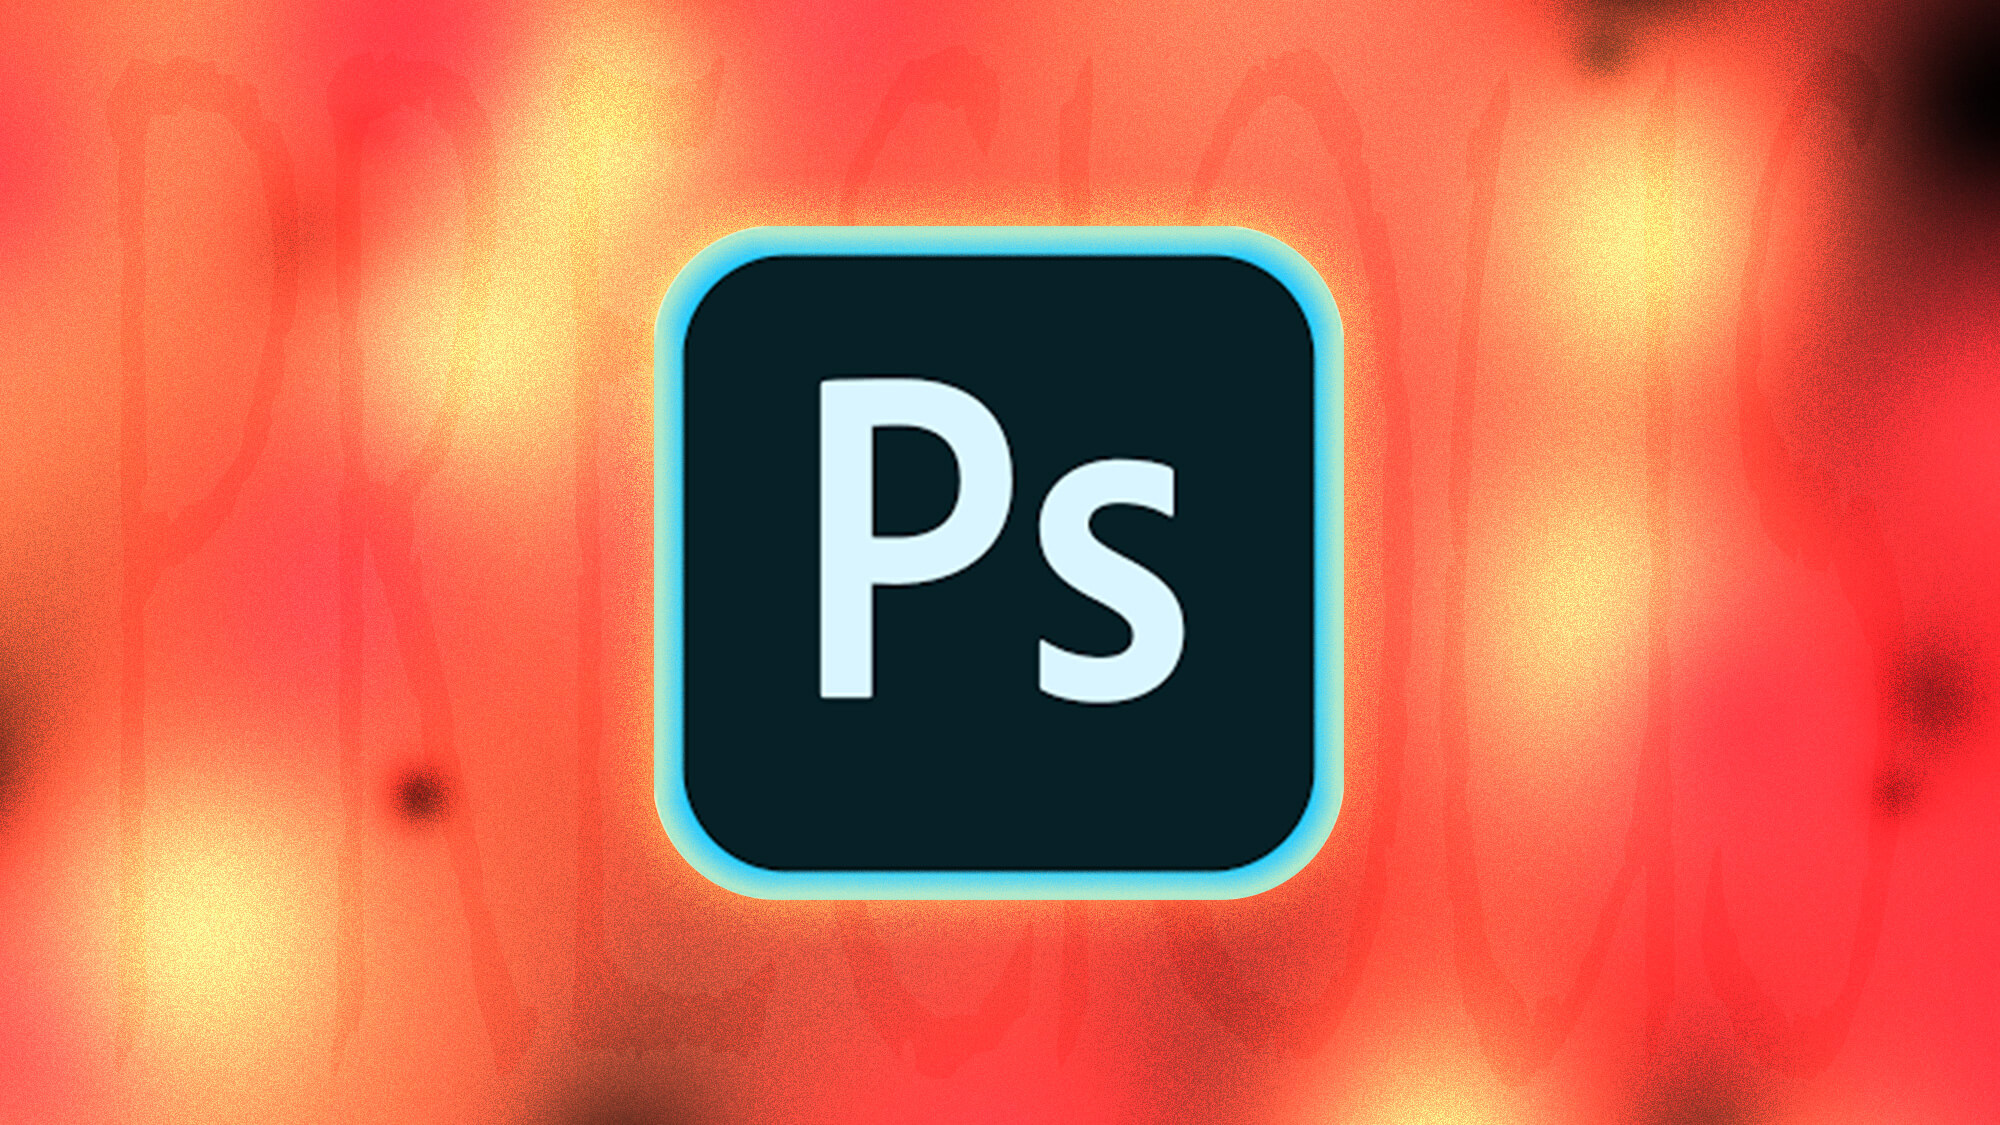 کامل ترین معرفی فتوشاپ [Adobe Photoshop] + ویژگی ها